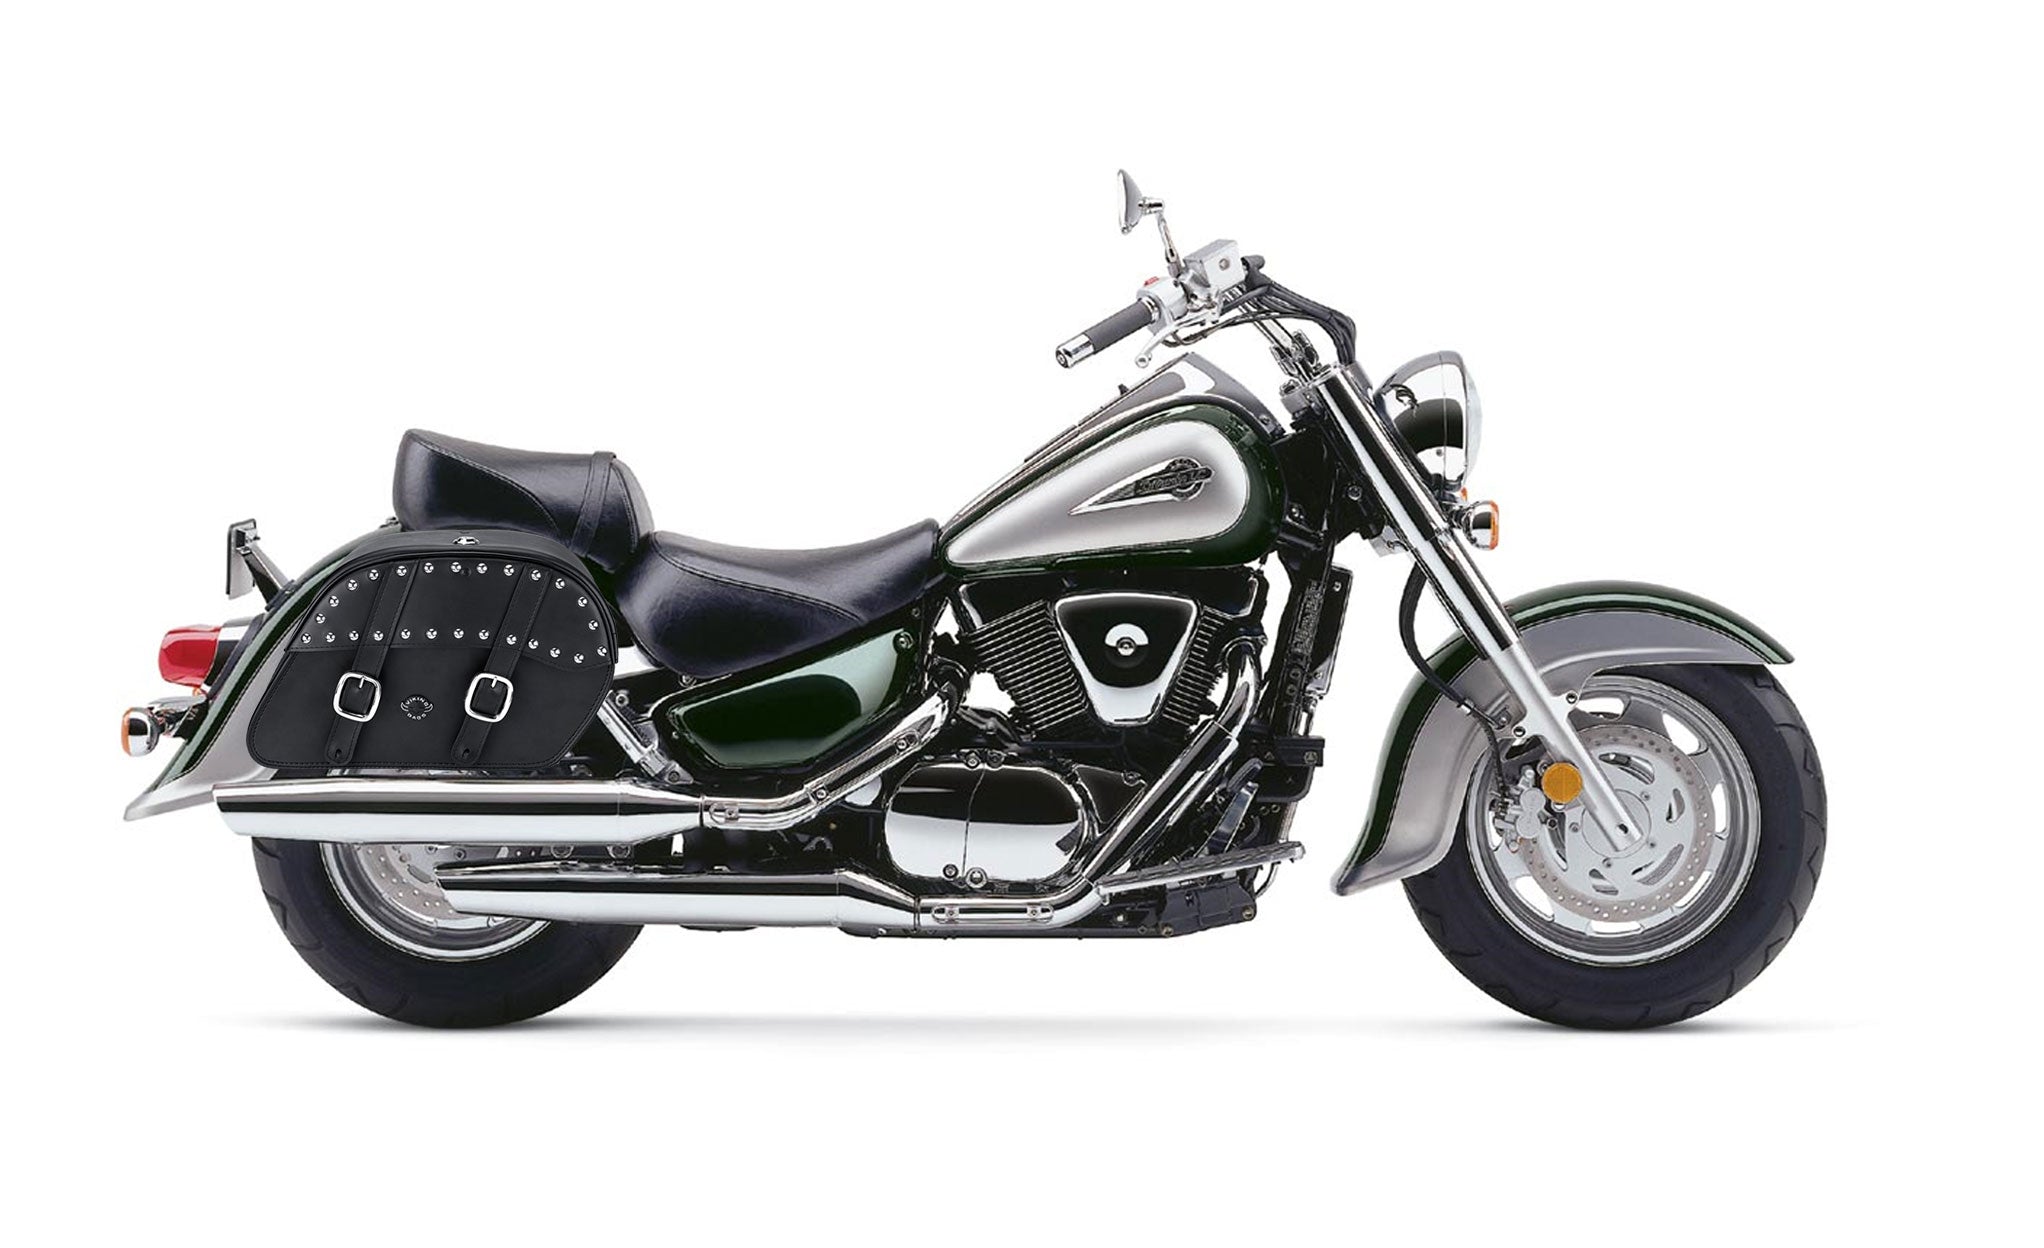 Viking Skarner Large Suzuki Intruder 1500 Vl1500 Leather Studded Motorcycle Saddlebags on Bike Photo @expand